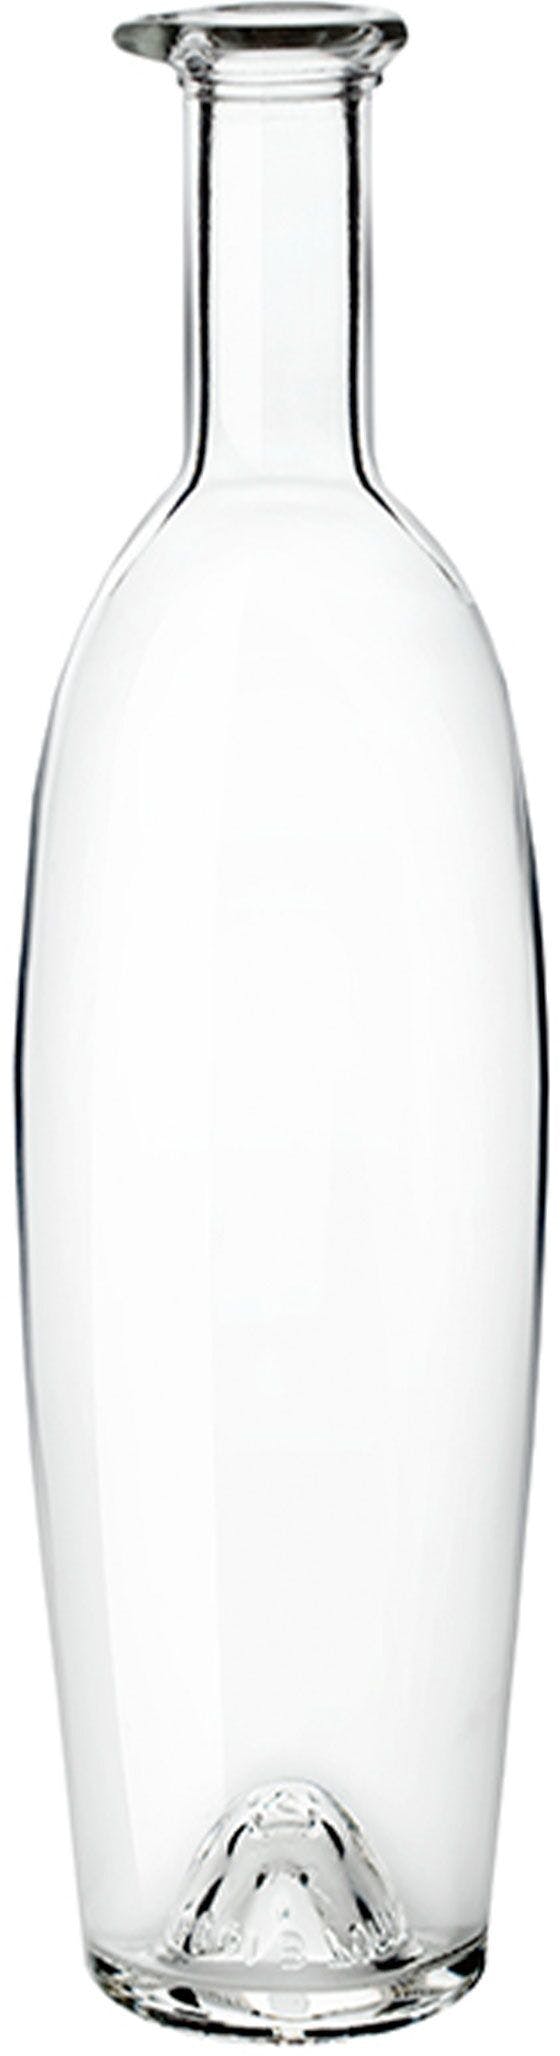 Flasche MODULOR  500 ml BG-Korken